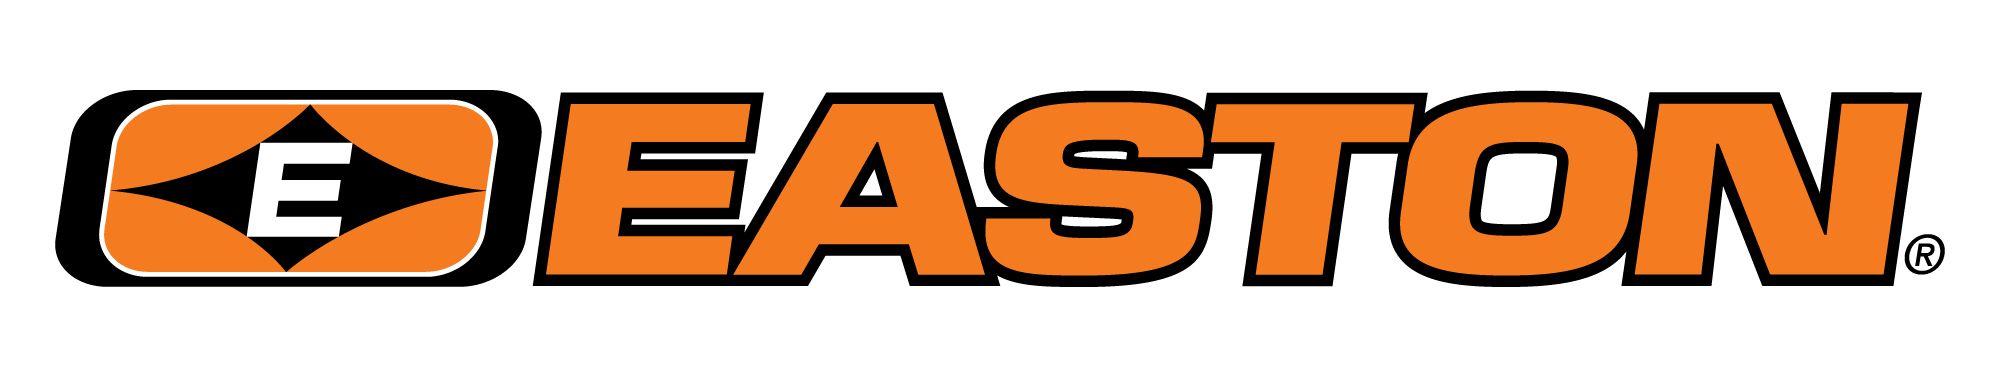 Easton Archery Logo - Easton Logos